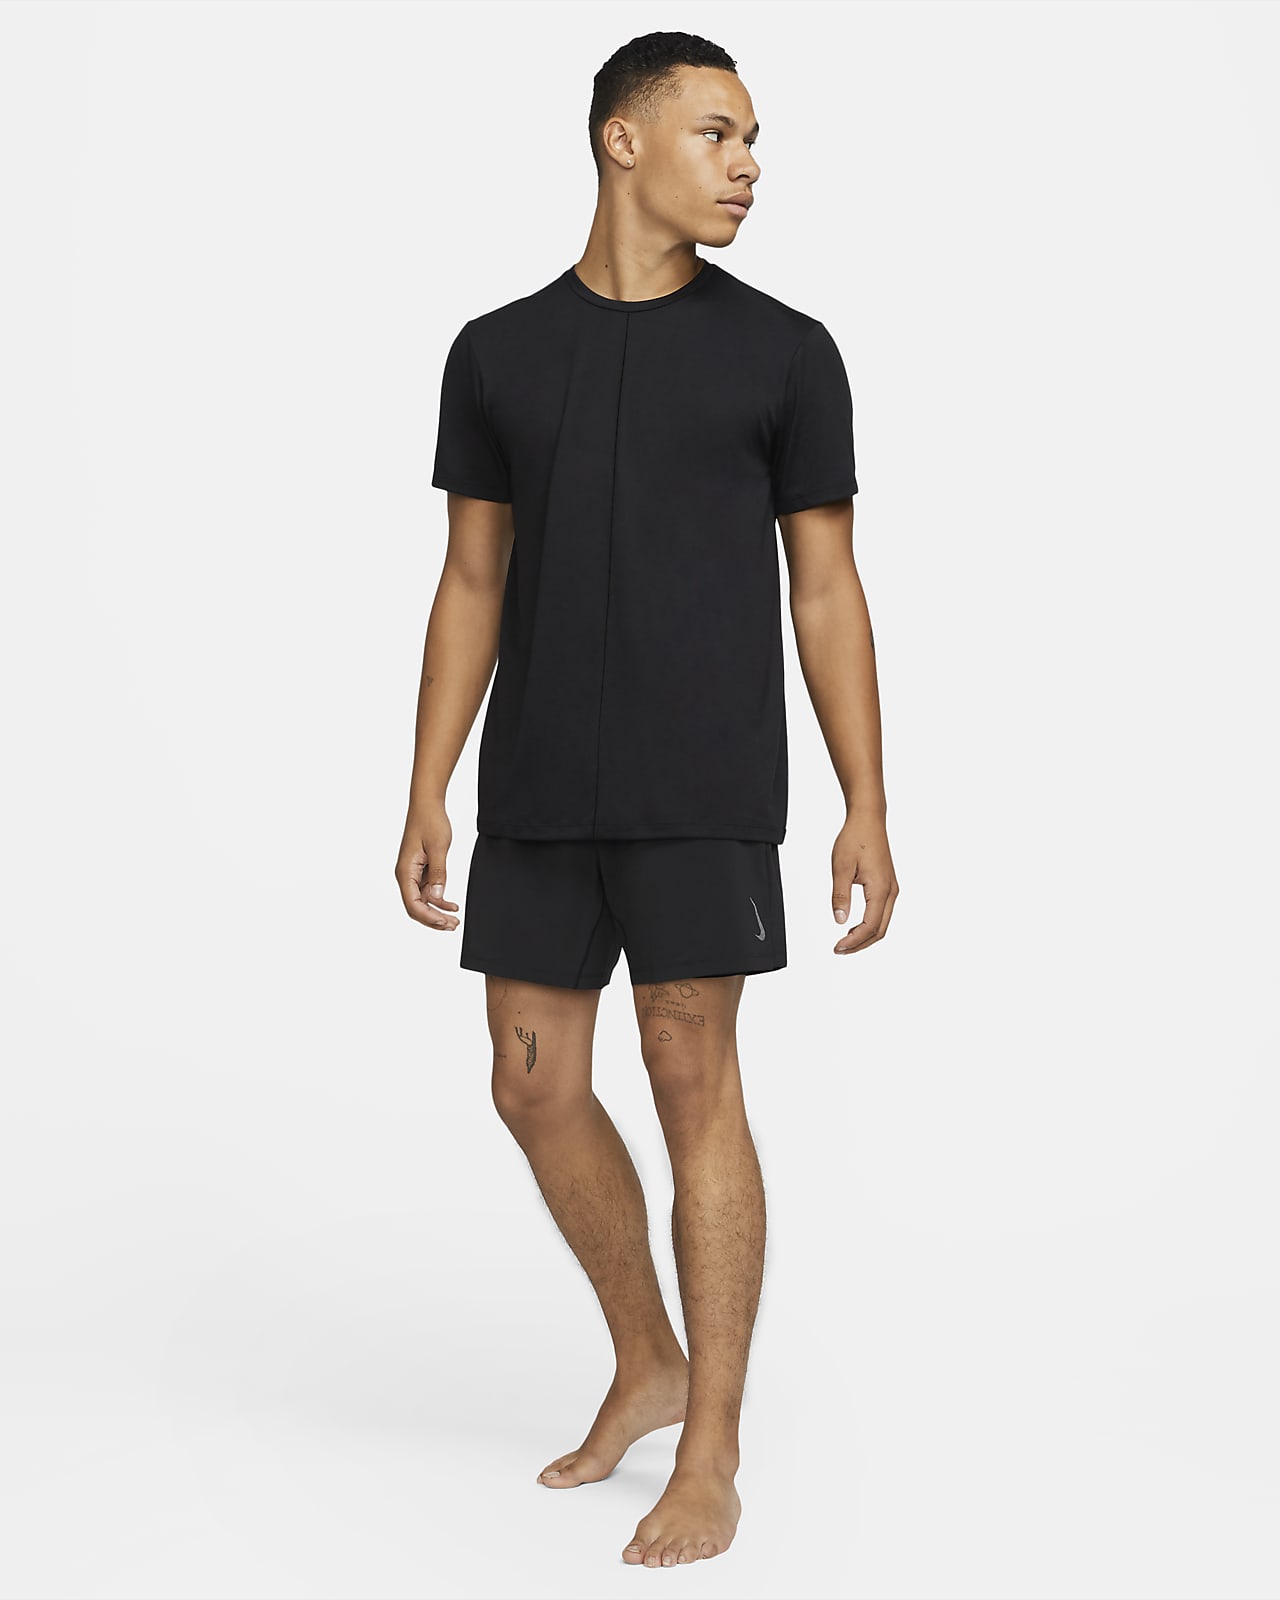 Men's Nike Yoga Shorts - Ash Green/Mint